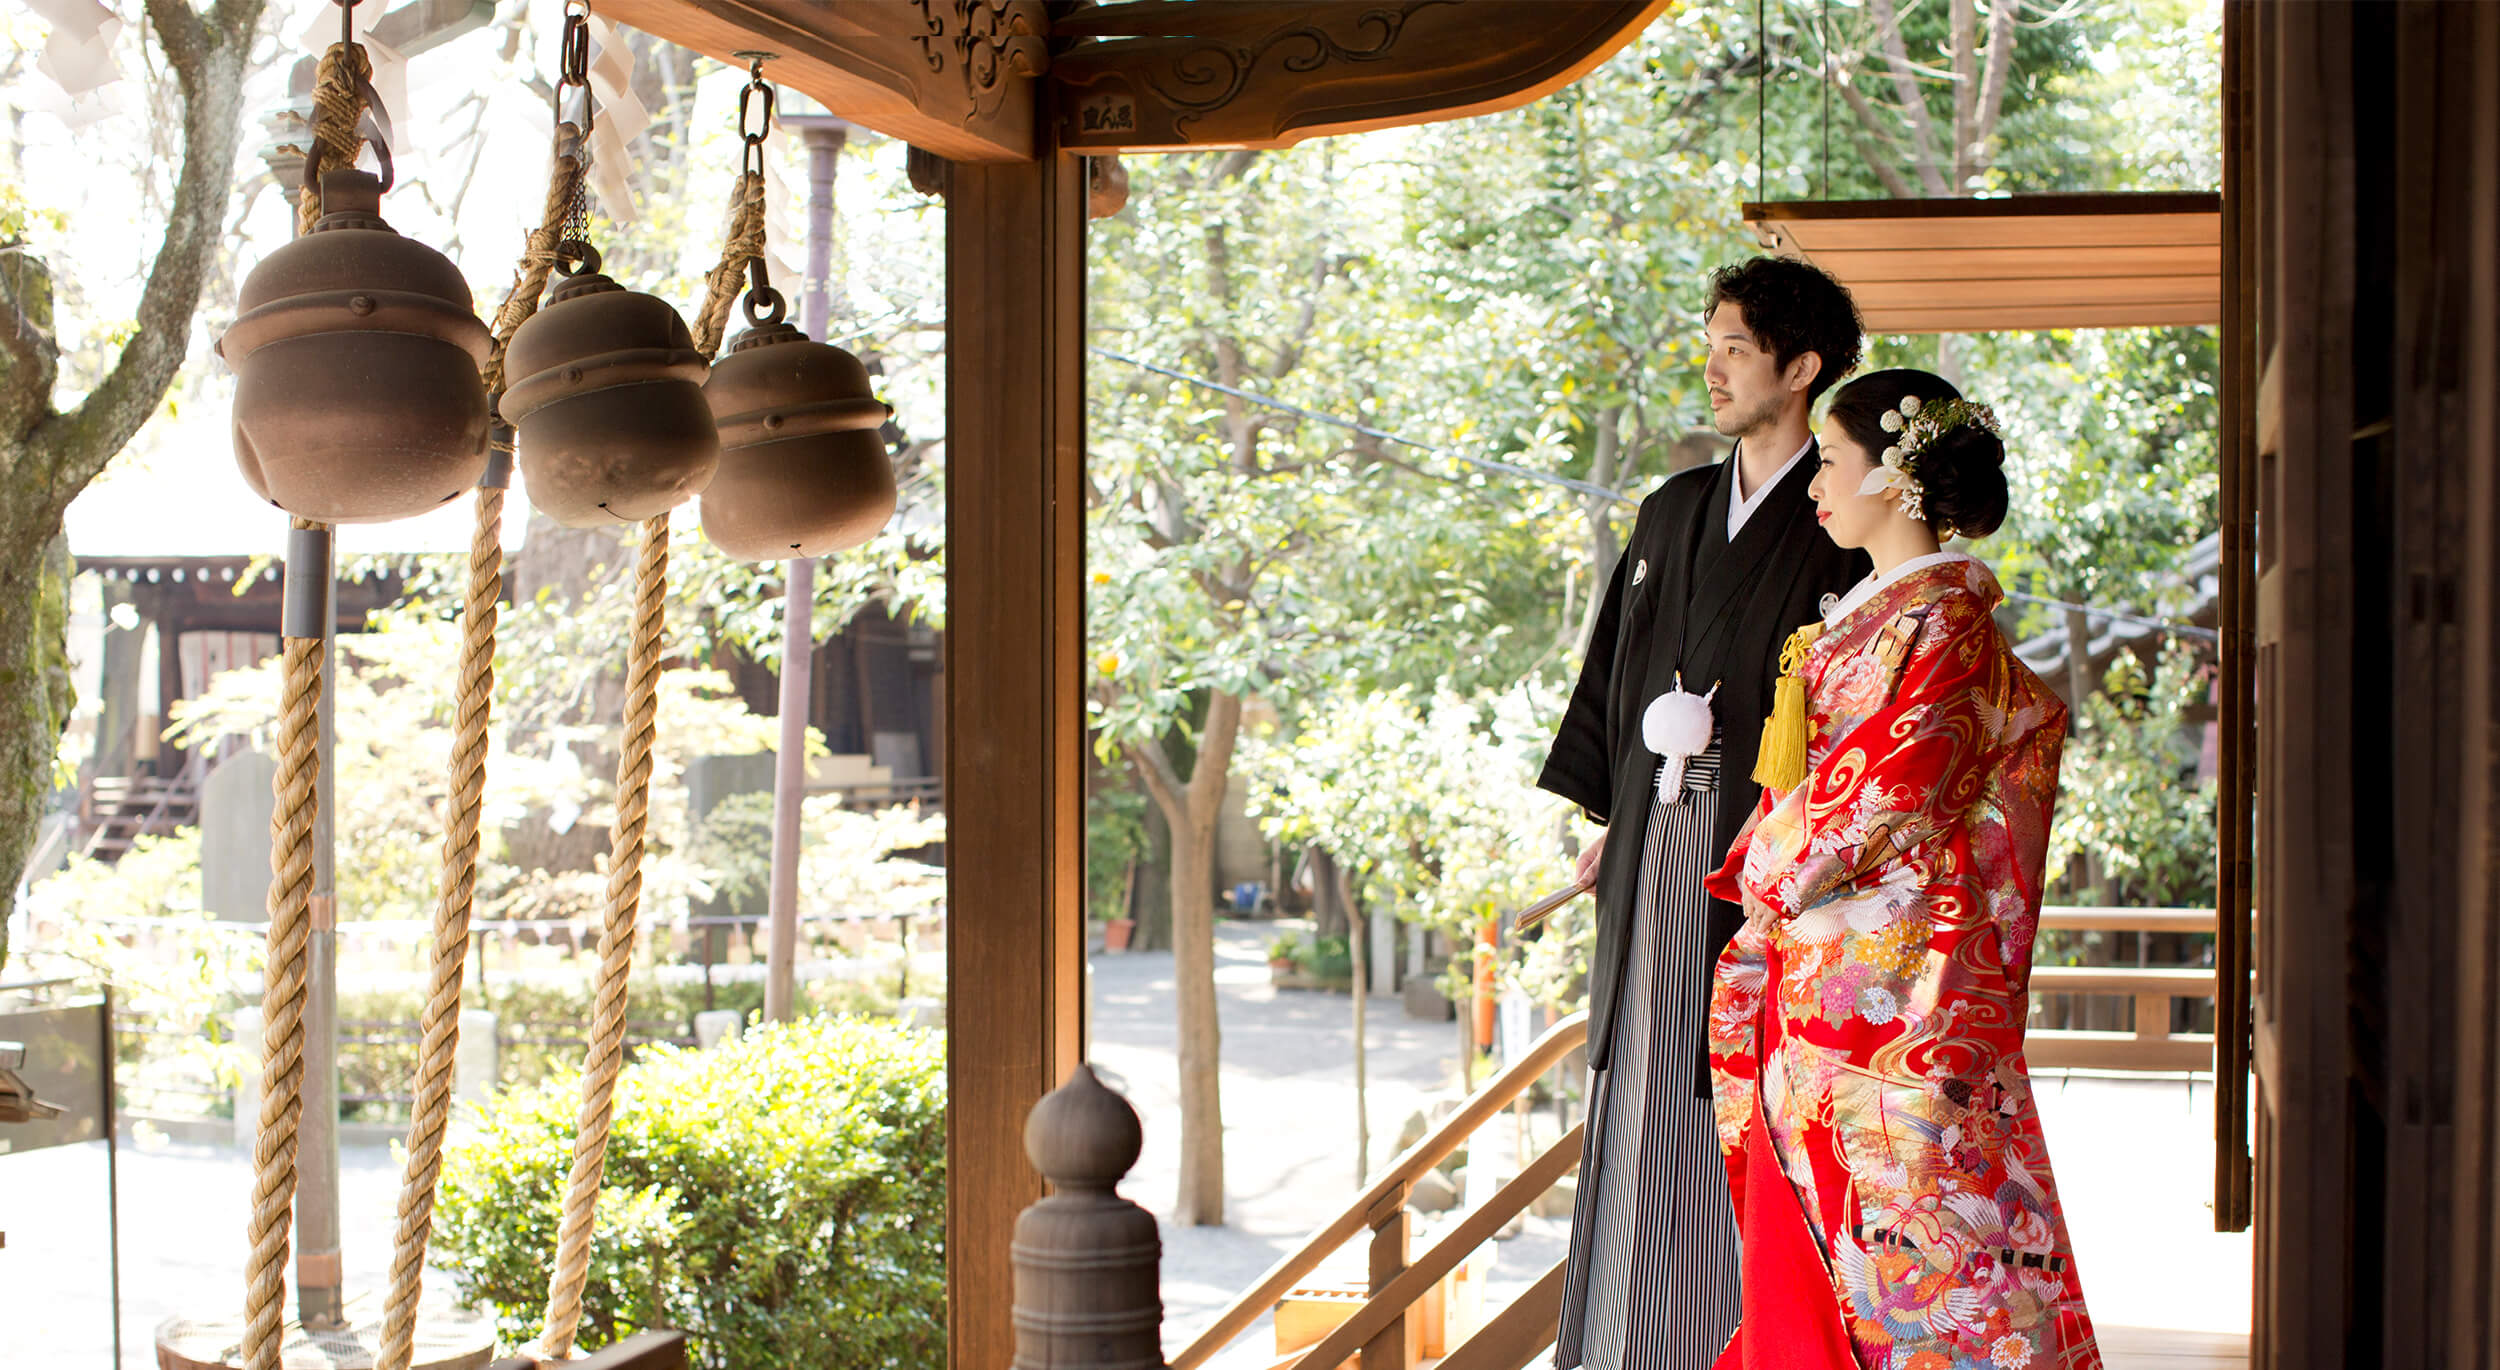 七社神社では、神前式でお二人の永遠の幸せを心より祝福いたします。